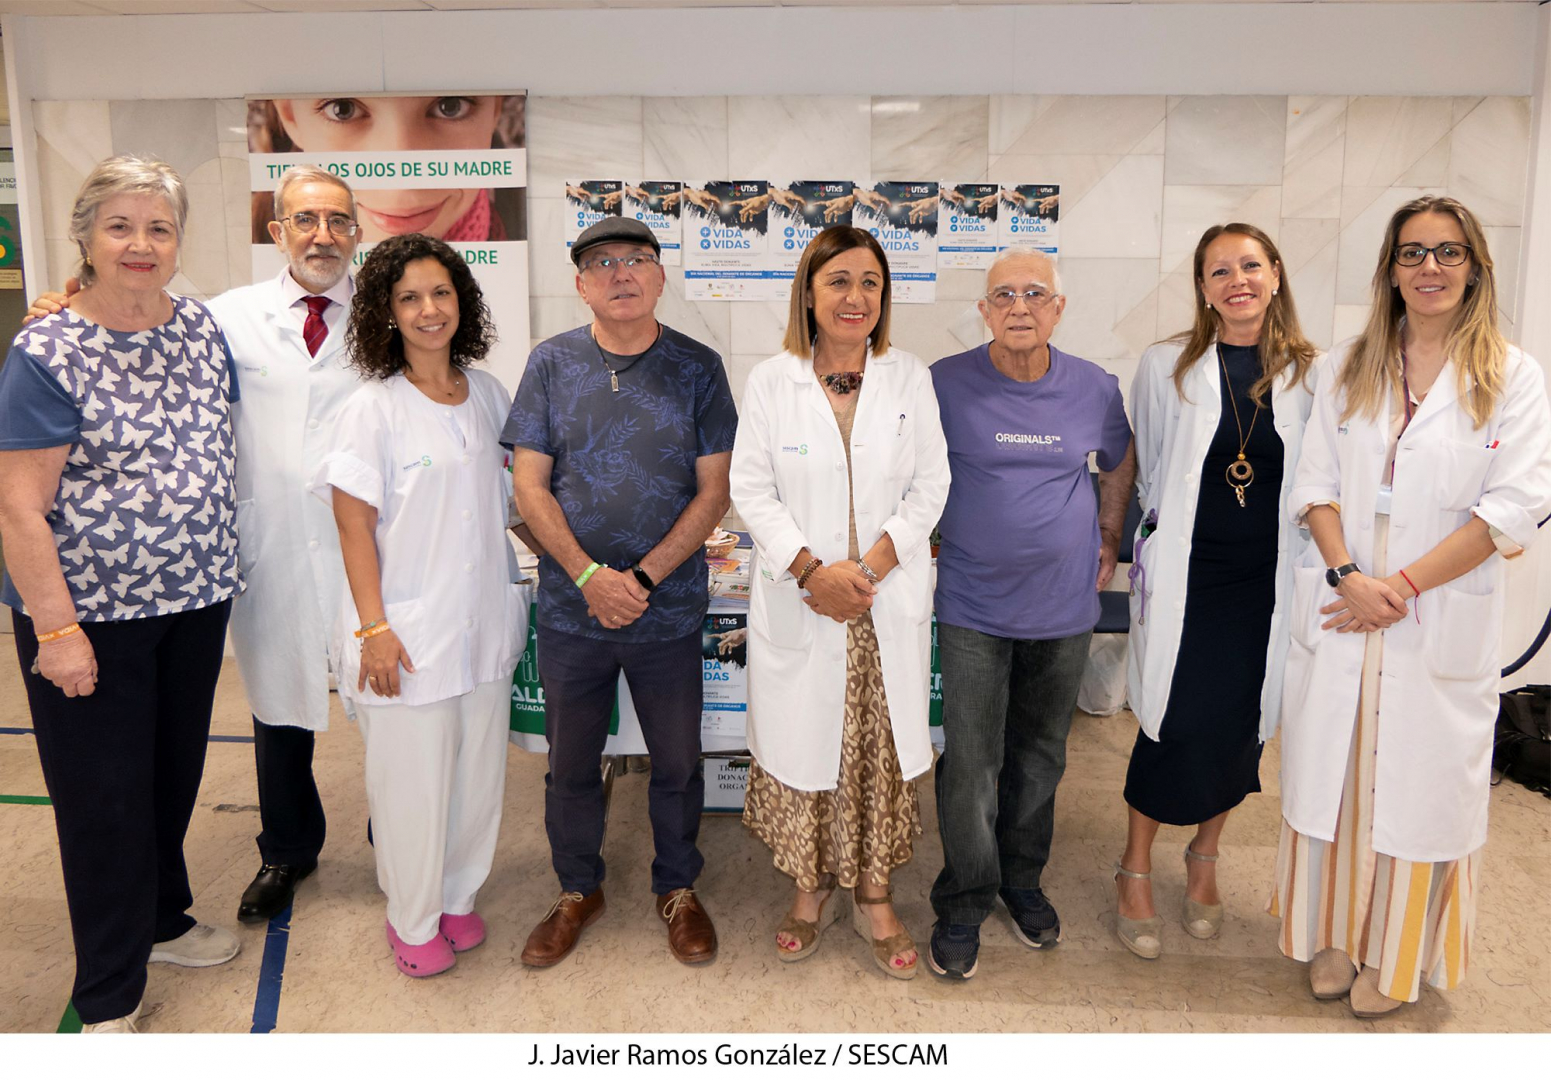 La Asociación Alcer ha instalado un puesto informativo en el centro sanitario//Imagen: J. Javier Ramos González. Sescam.